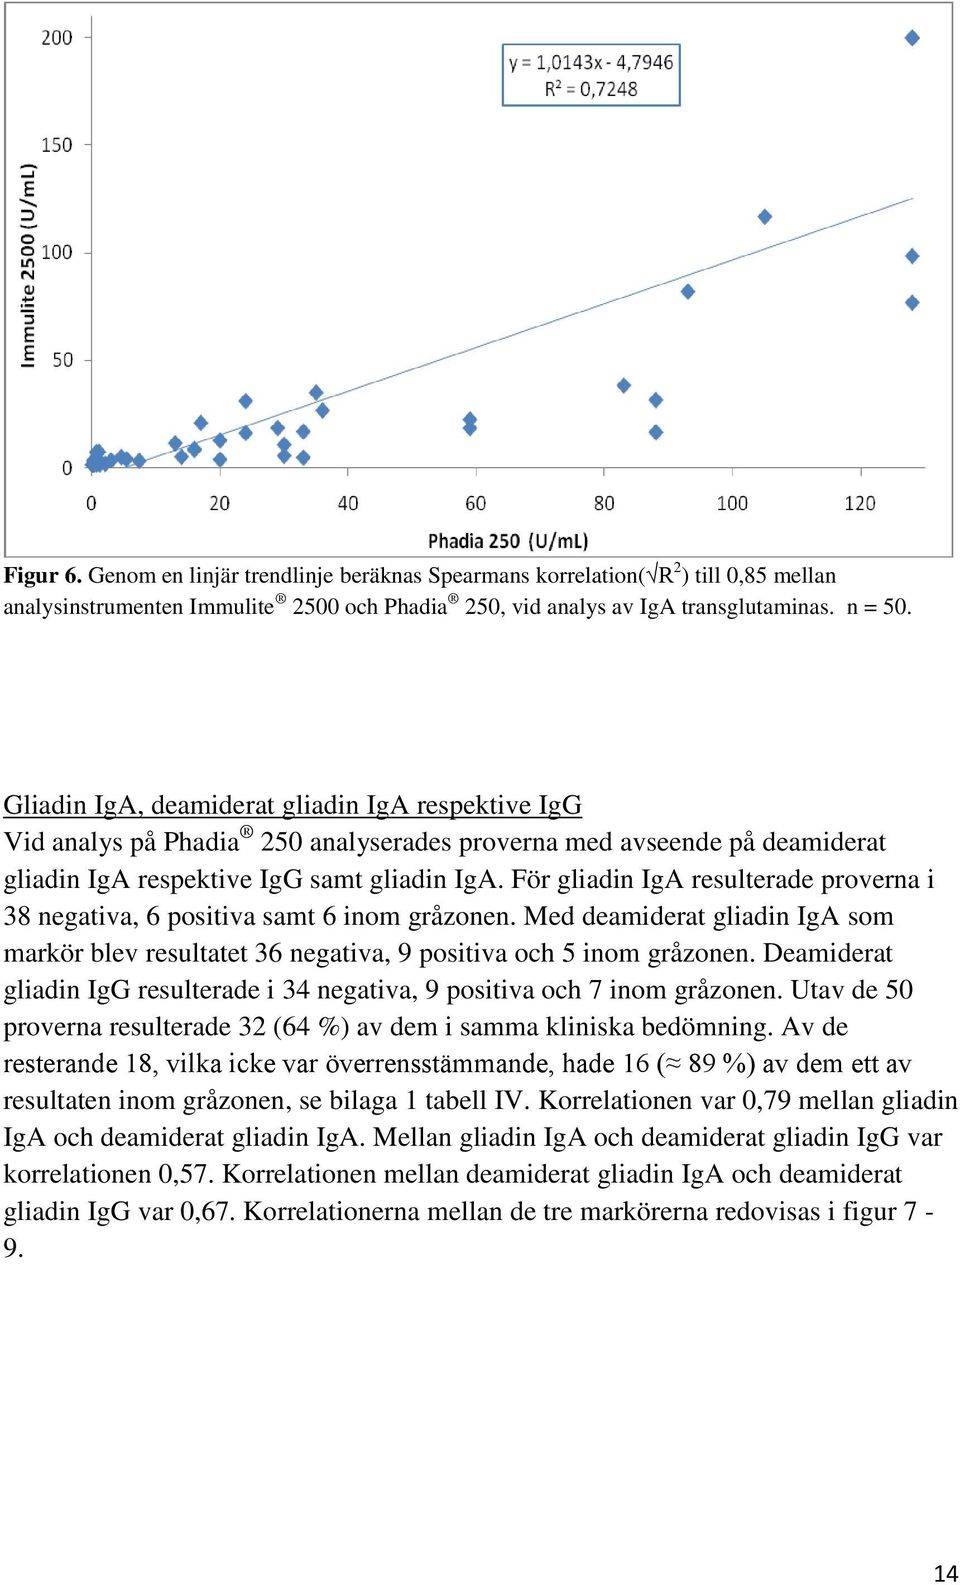 För gliadin IgA resulterade proverna i 38 negativa, 6 positiva samt 6 inom gråzonen. Med deamiderat gliadin IgA som markör blev resultatet 36 negativa, 9 positiva och 5 inom gråzonen.